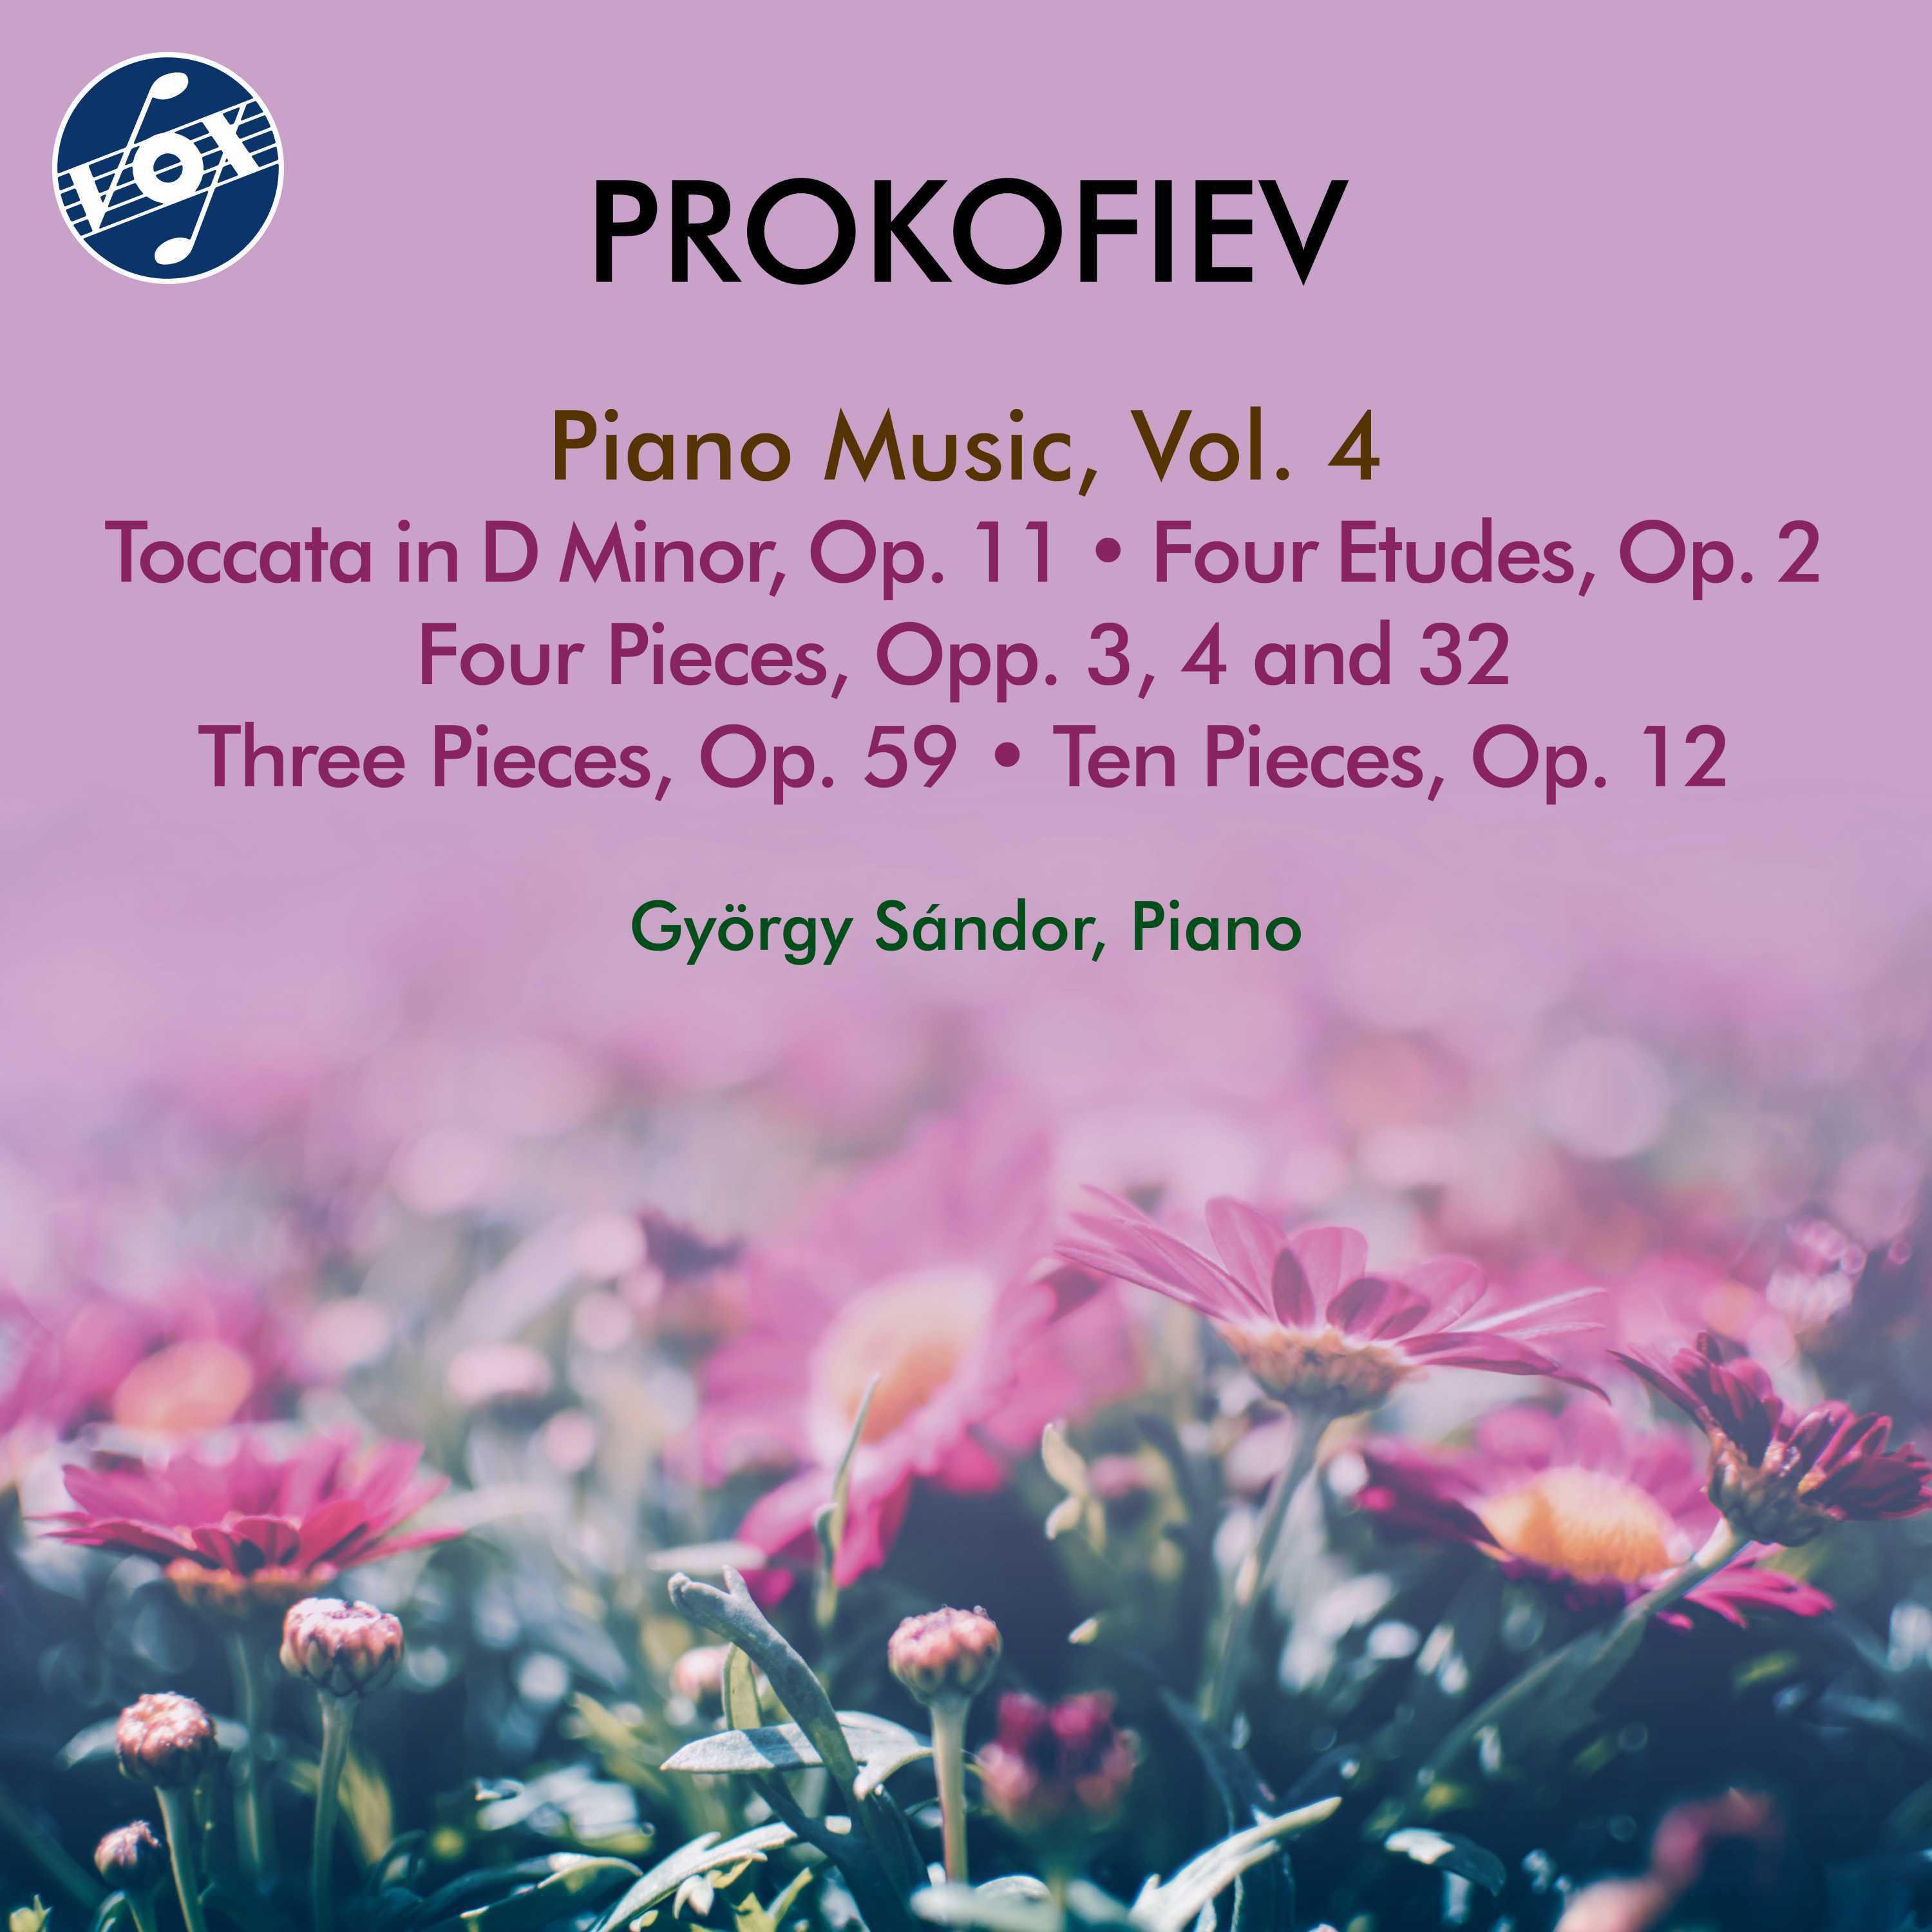 György Sàndor - 10 Pieces, Op. 12:No. 1. March